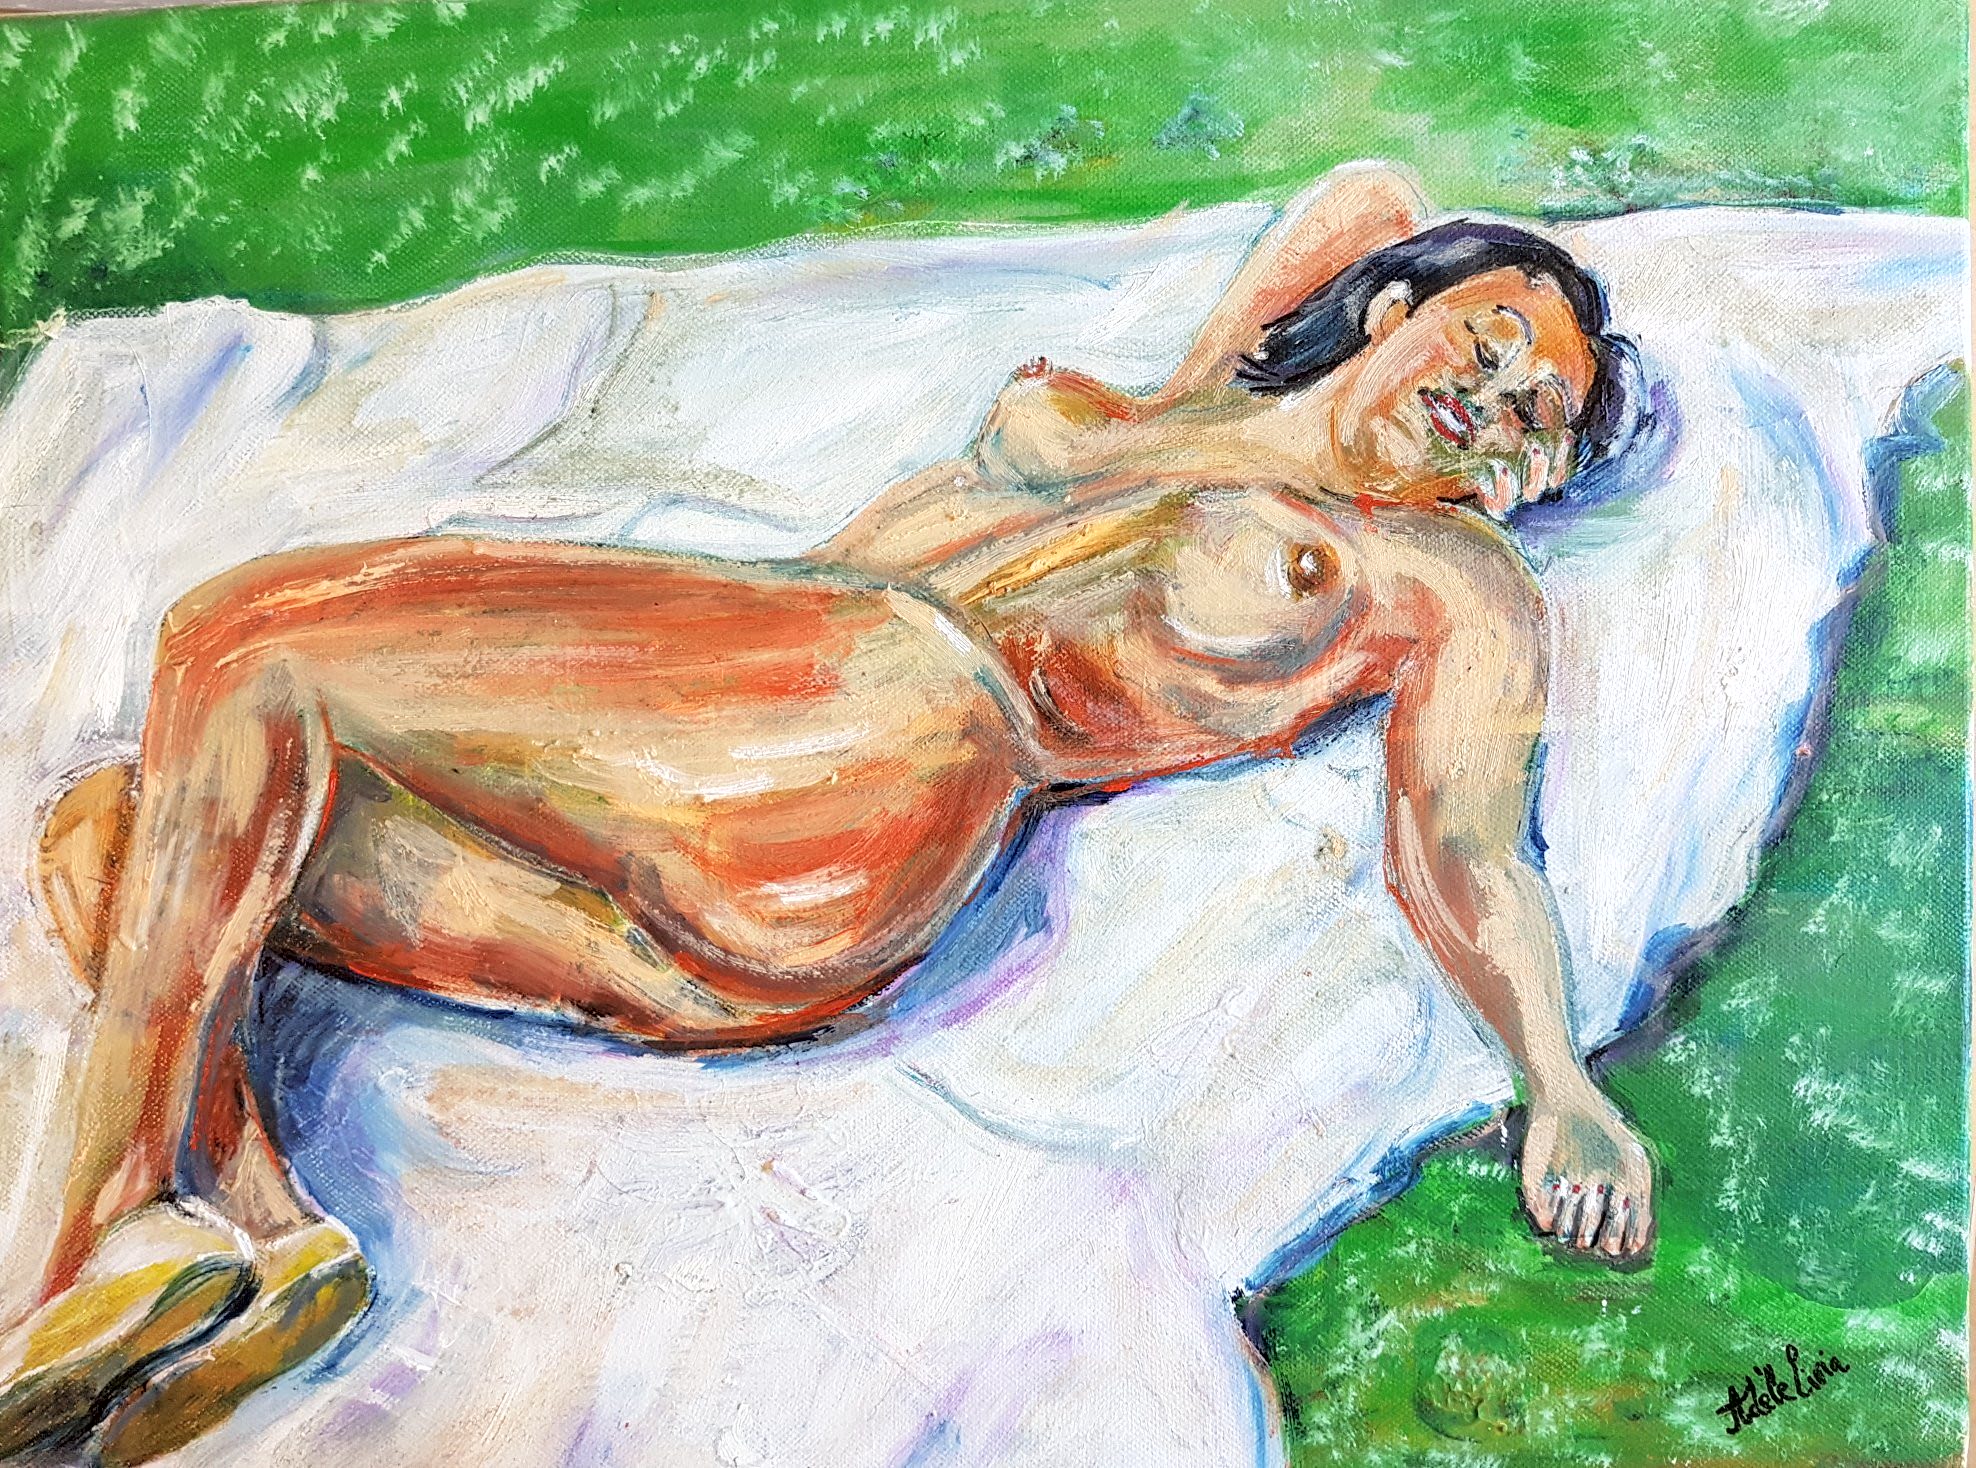 Peinture de l'artiste peintre Adèle liva, le titre de l'oeuvre est : Portrait d'artiste